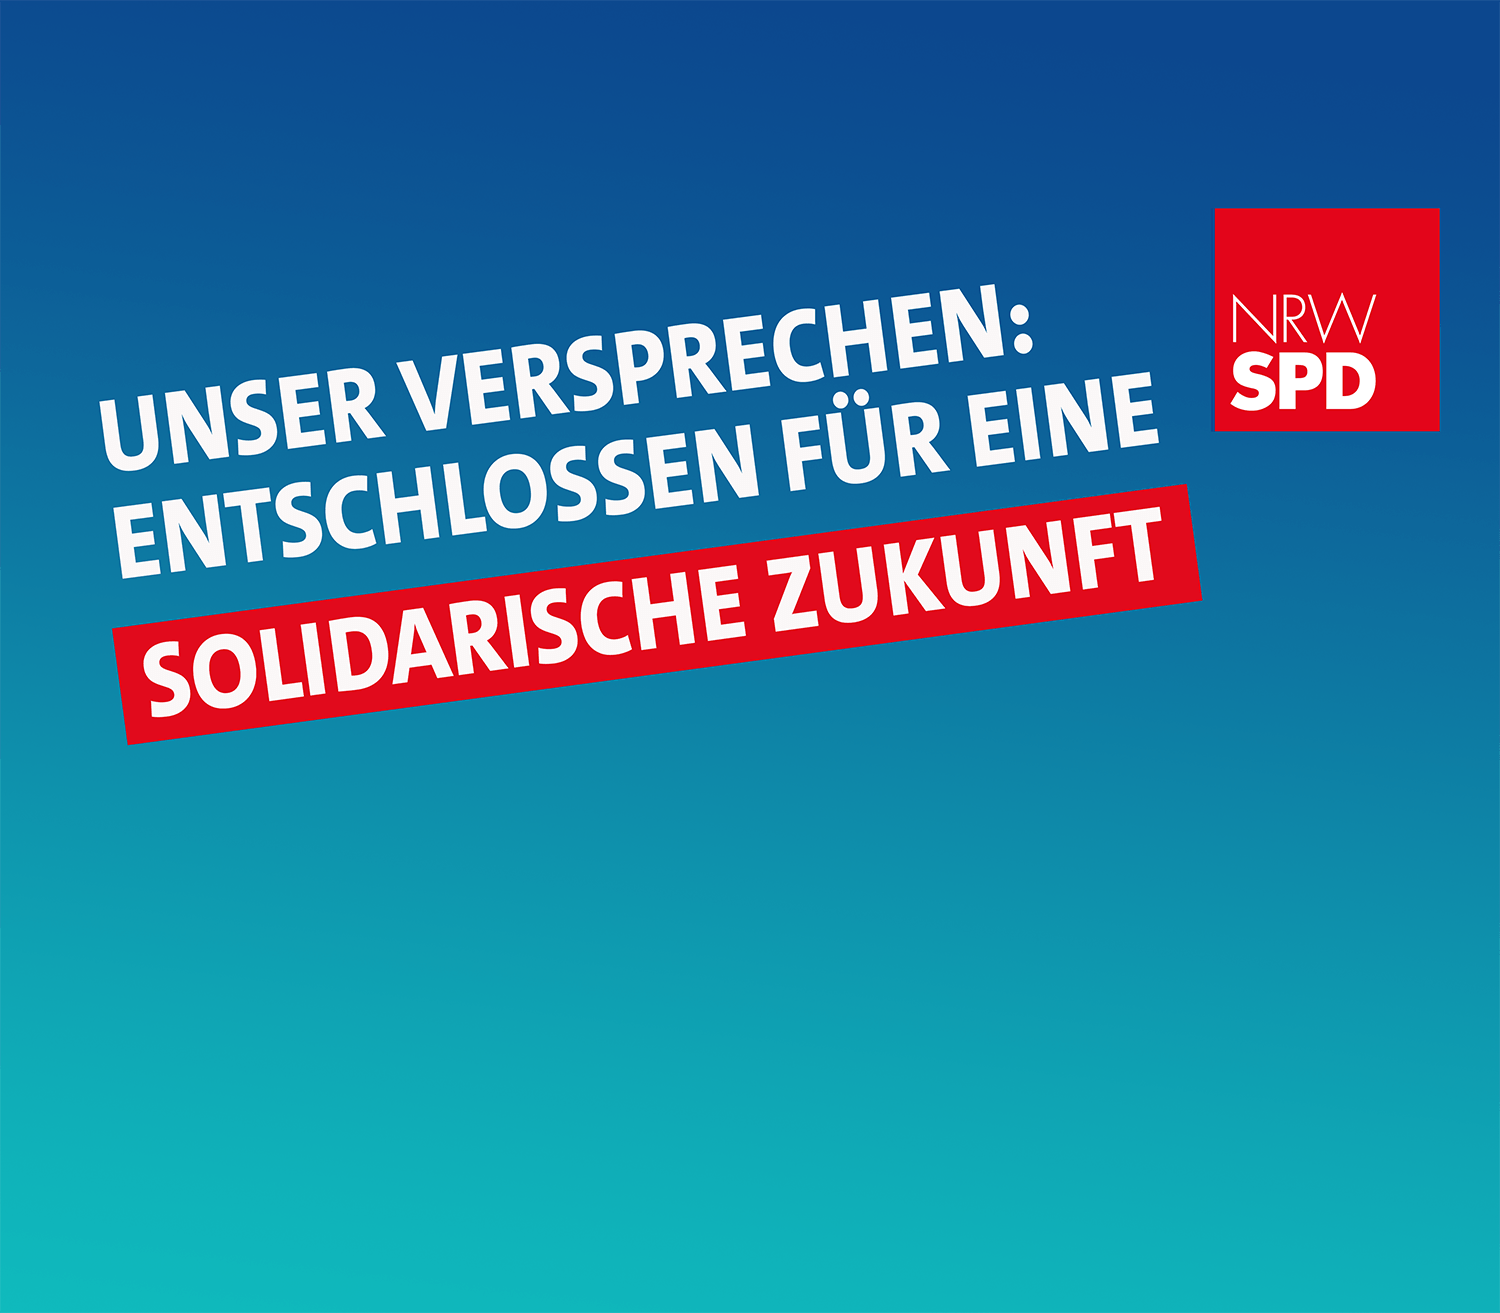 Digitales Banner mit weißer Schrift auf blauem Grund. "Unser Versprechen: Entschlossen für eine solidarische Zukunft"